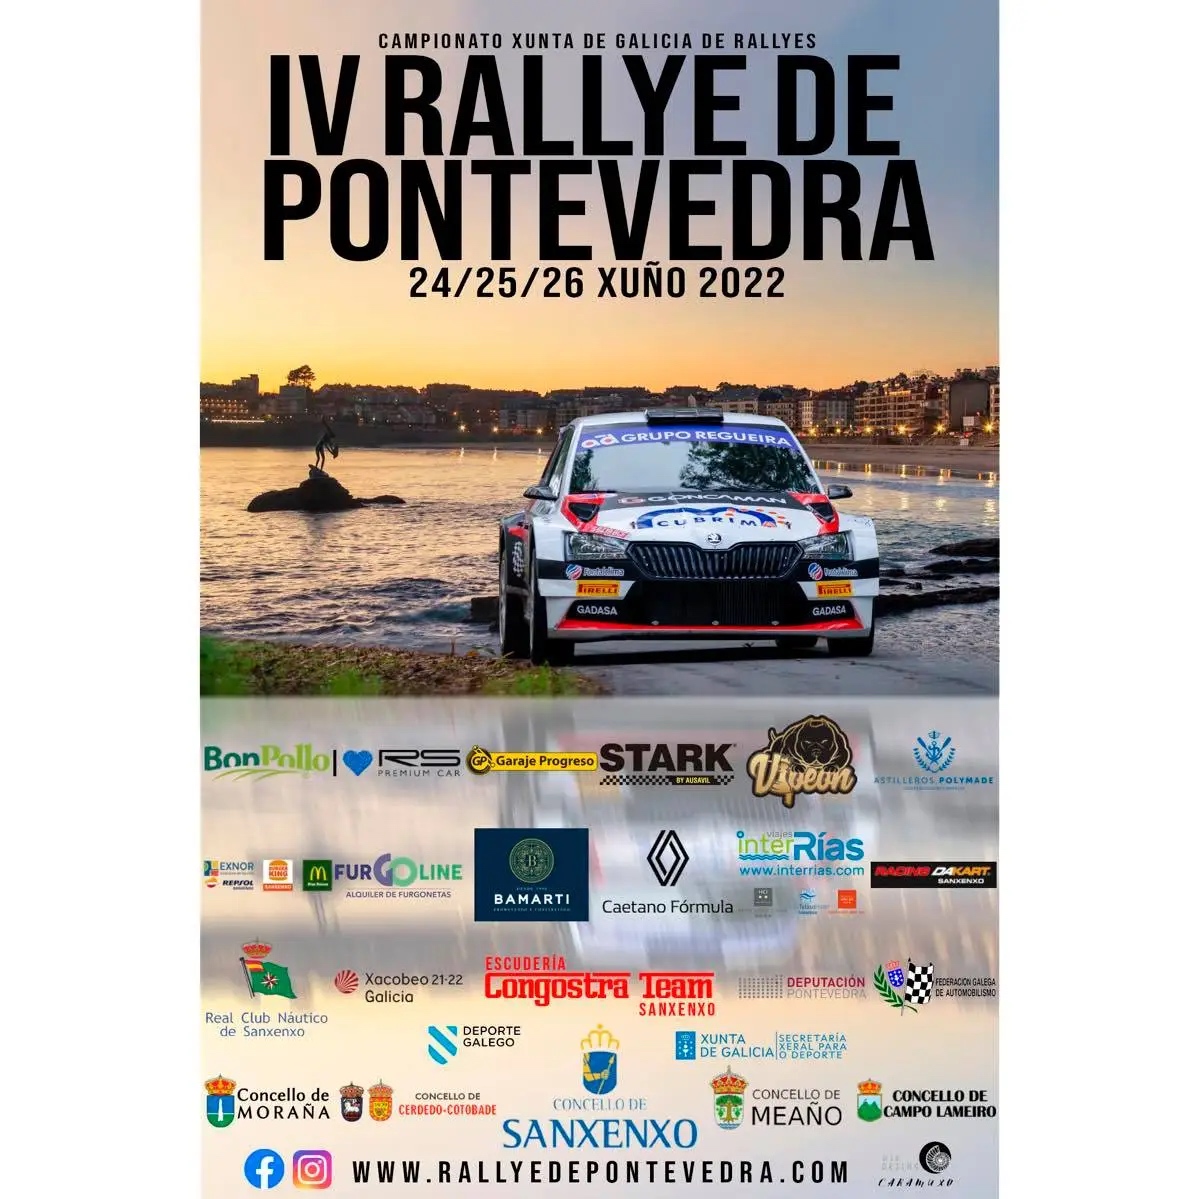 IV RALLYE DE PONTEVEDRA